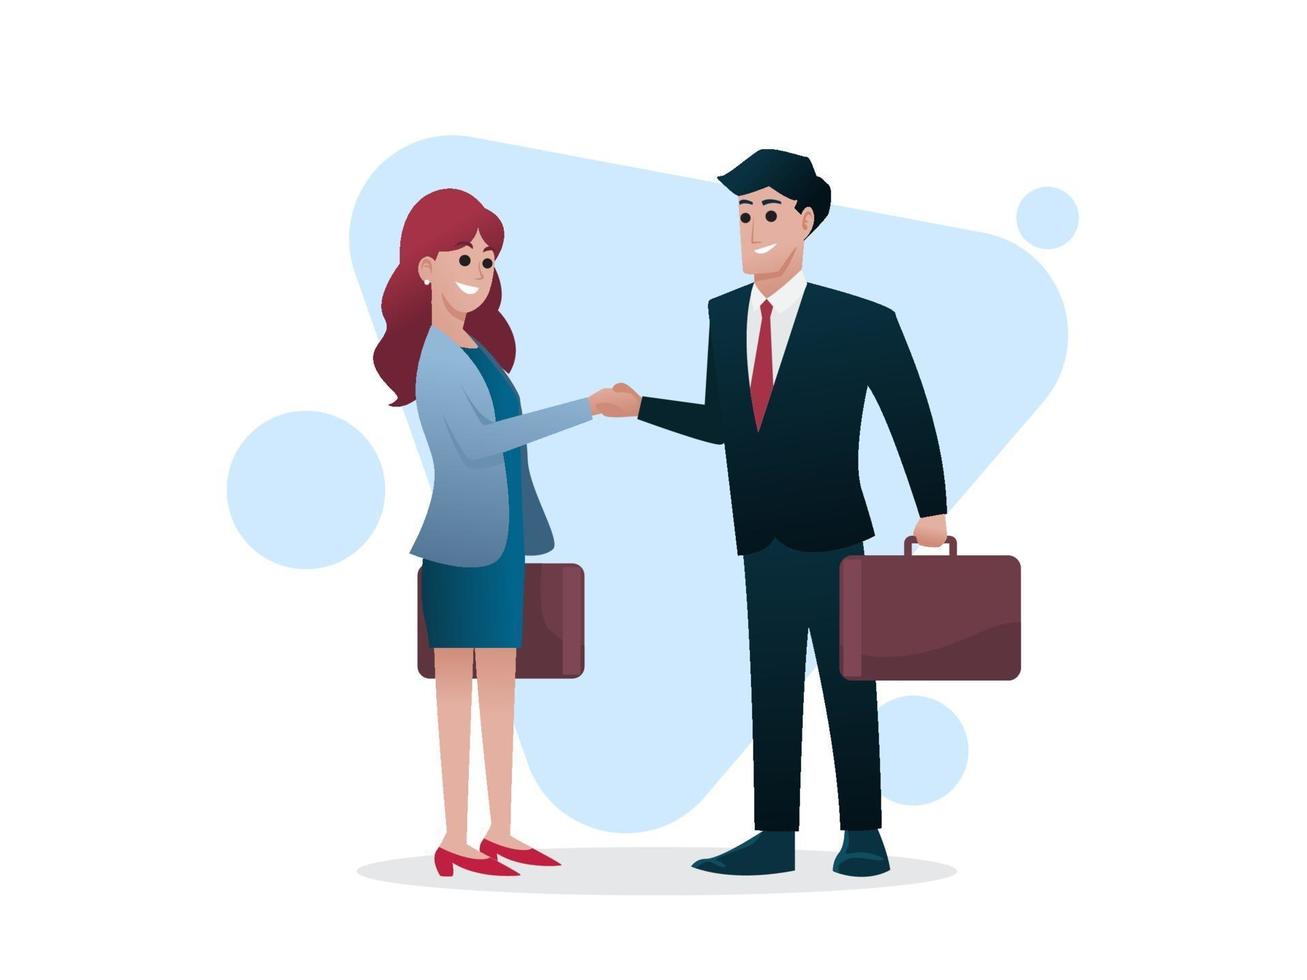 uomo e donna con valigetta si stringono la mano, affare o concetto di investitore, illustrazione vettoriale